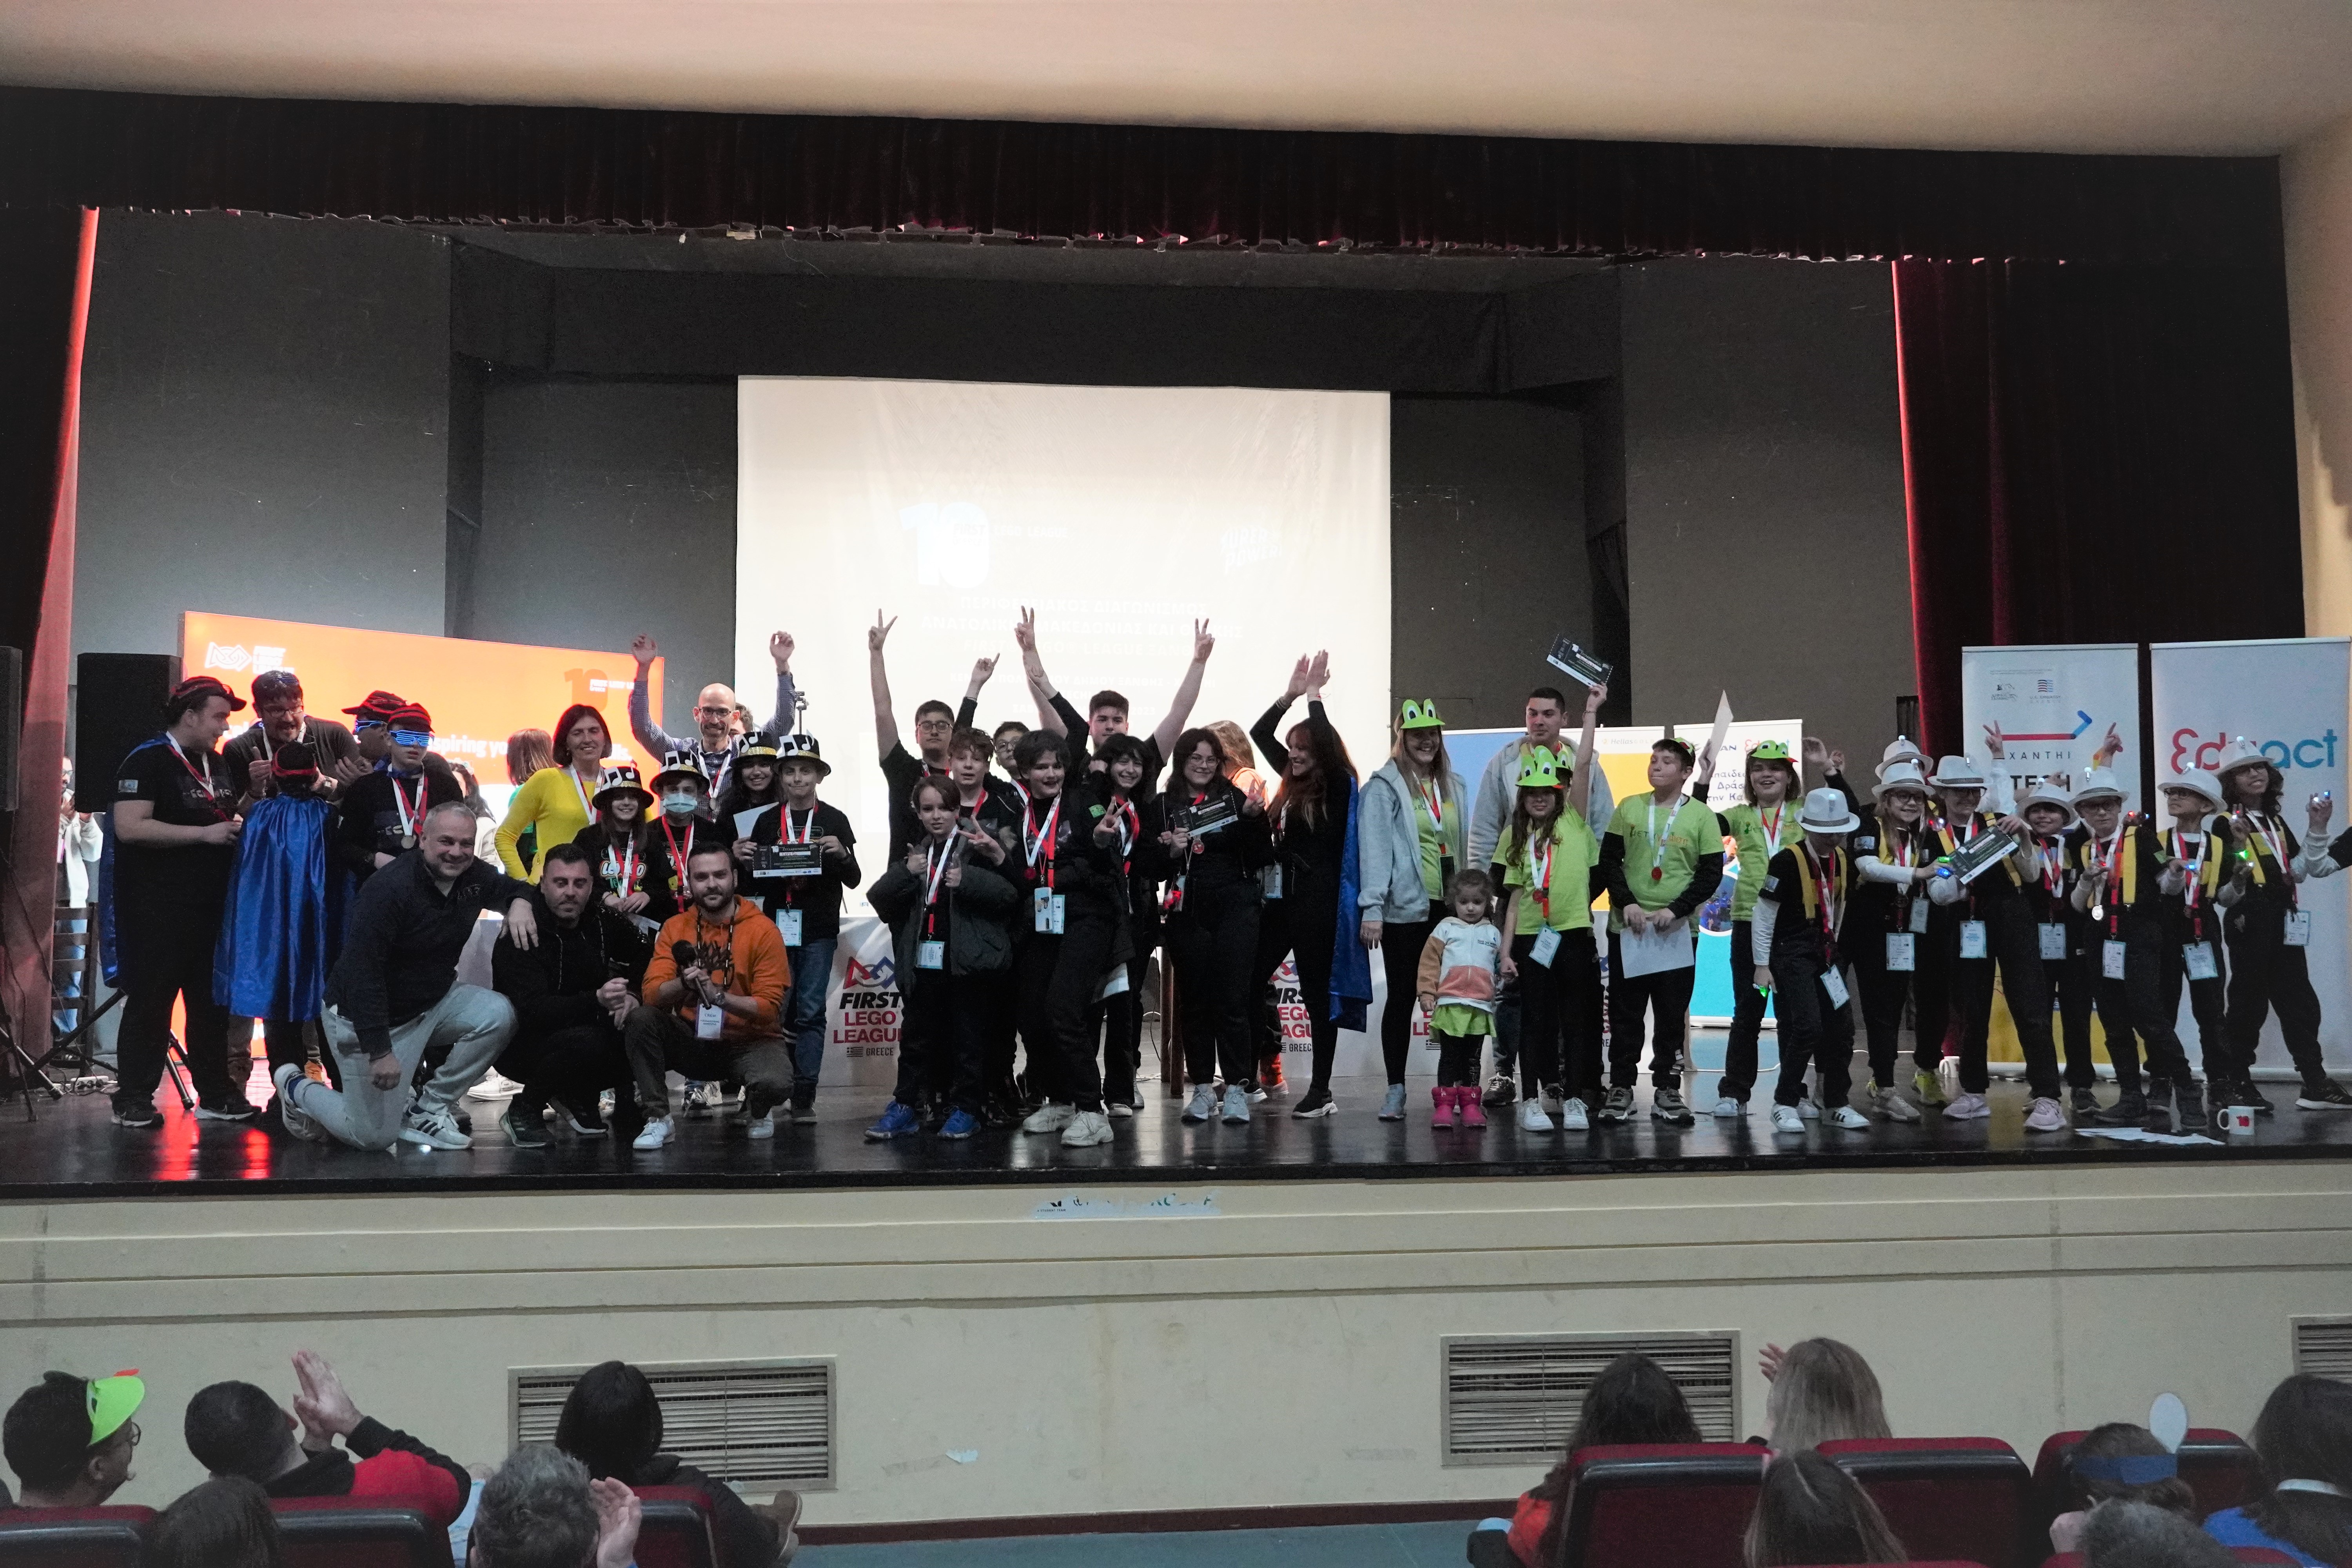 Ξάνθη: 180 μαθητές και προπονητές στον διαγωνισμό ρομποτικής